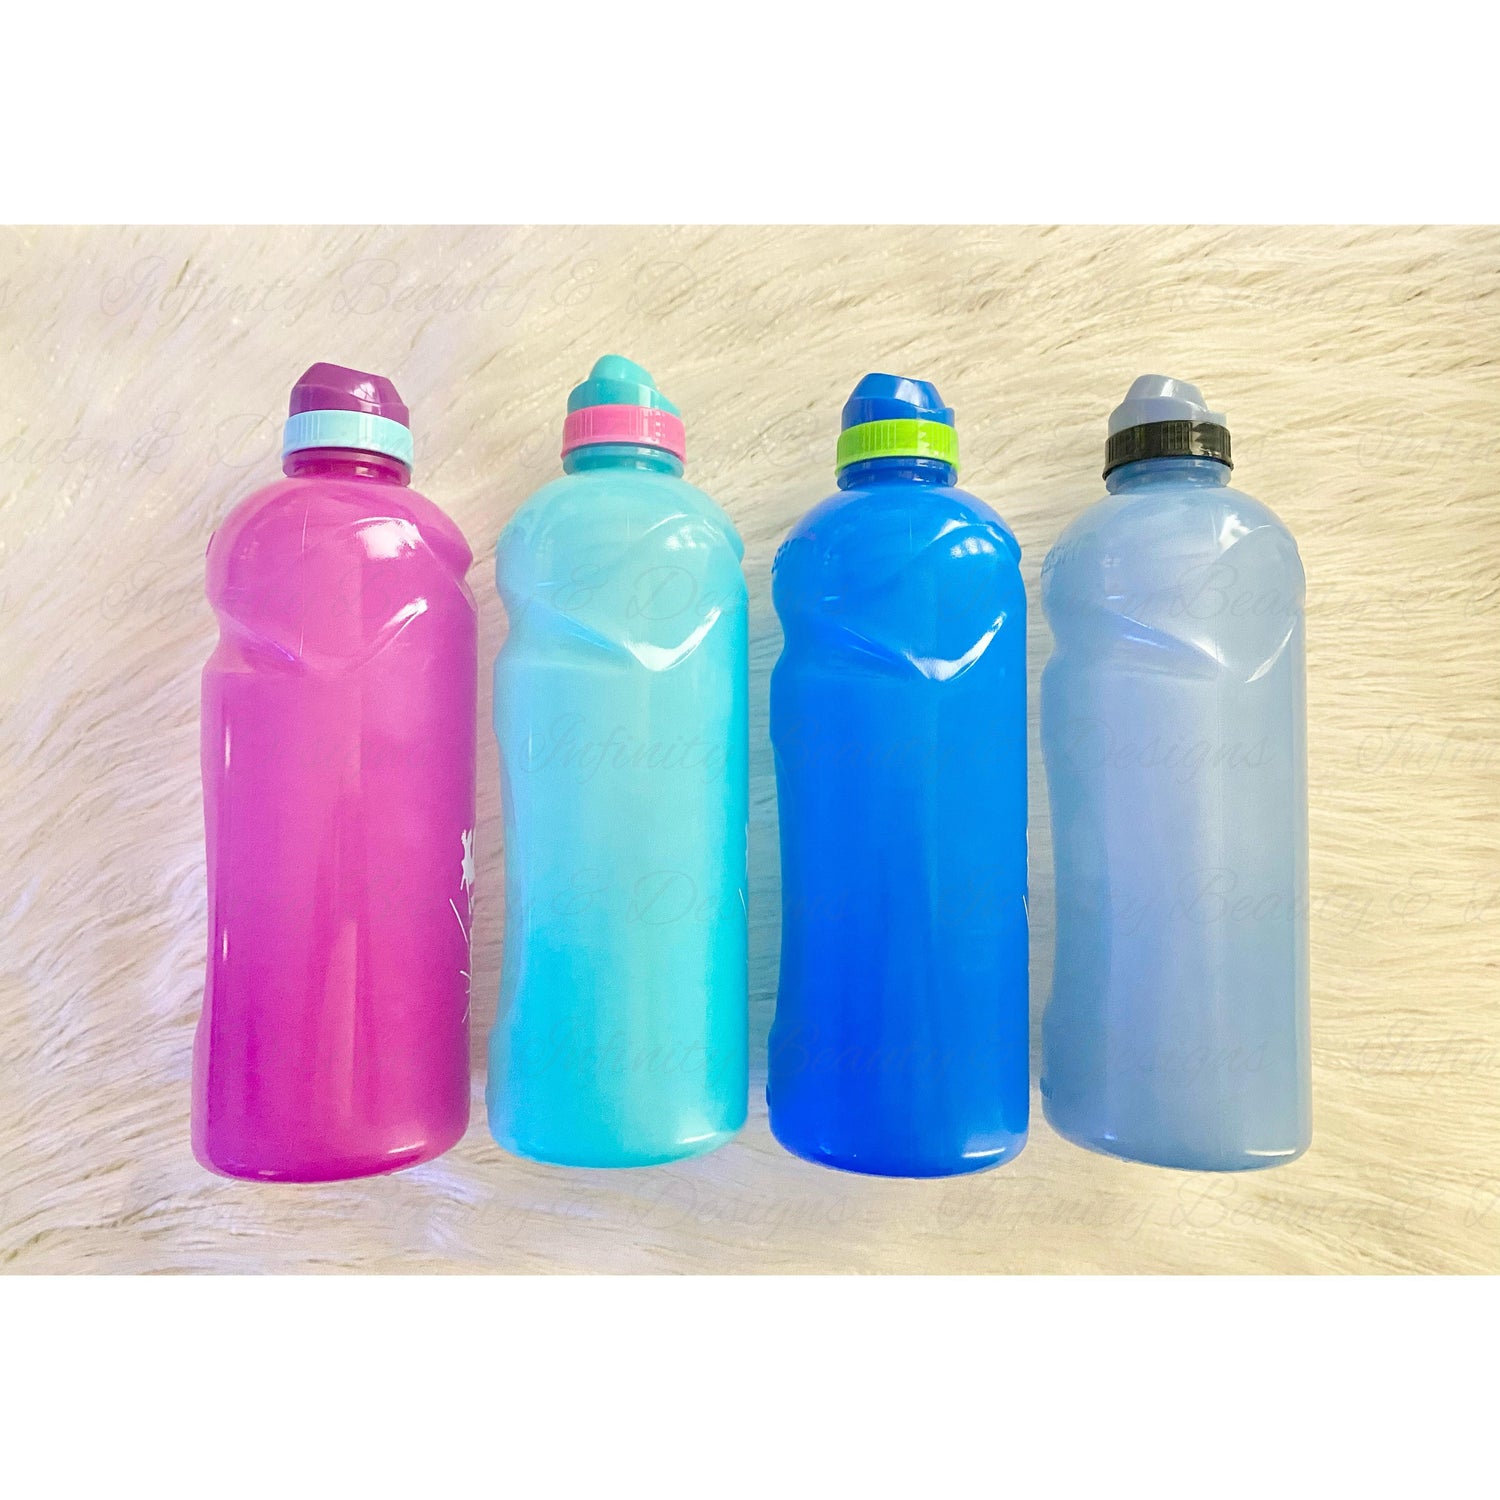 Kids 1L Water Bottle-Infinity Beauty & Designs